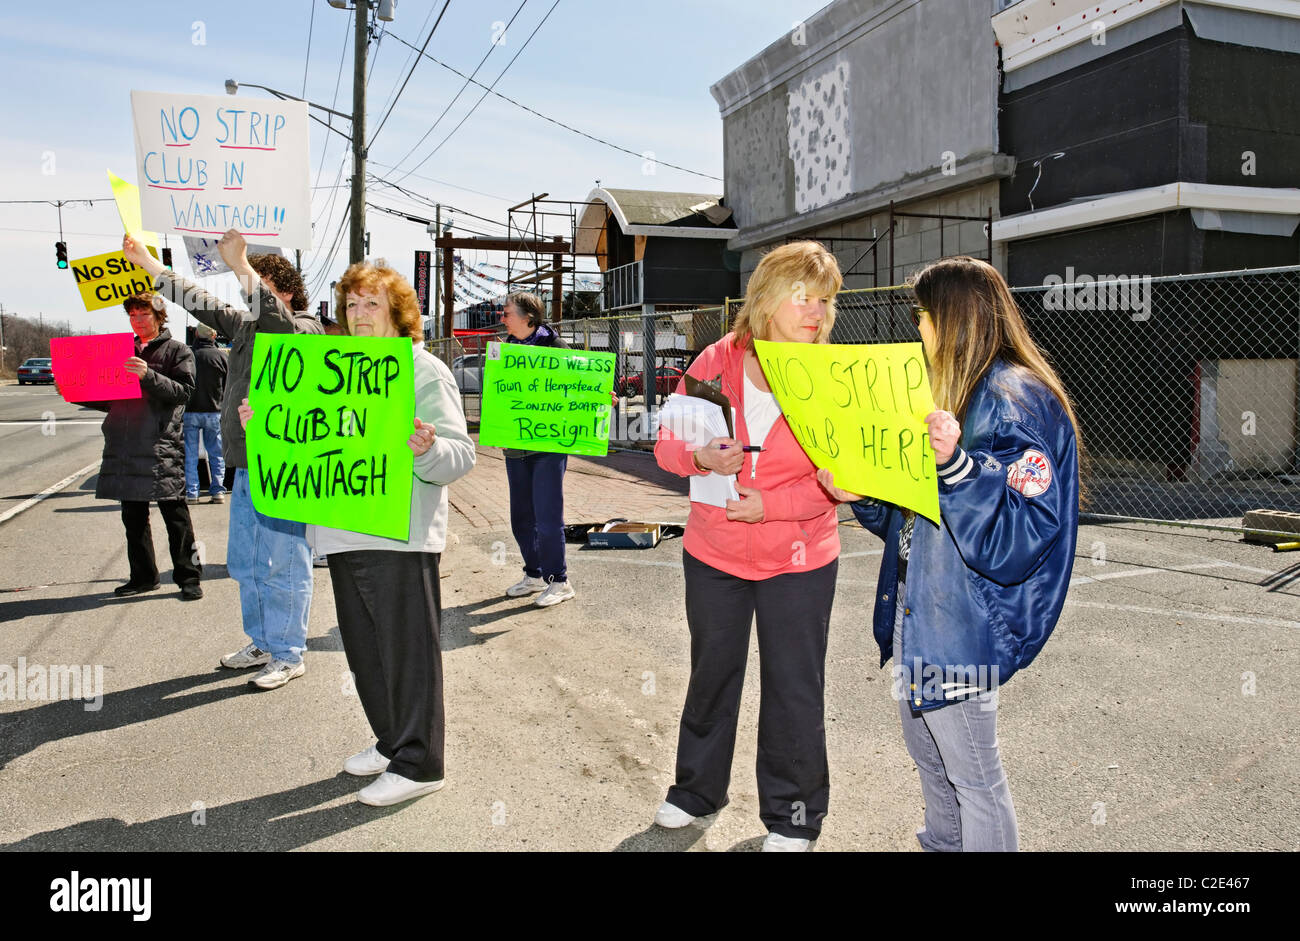 APR 9, 2011 - WANTAGH, NY : protestataires avec signes contre club de bande aurait été construit là, Sunrise Highway, Long Island NY Banque D'Images